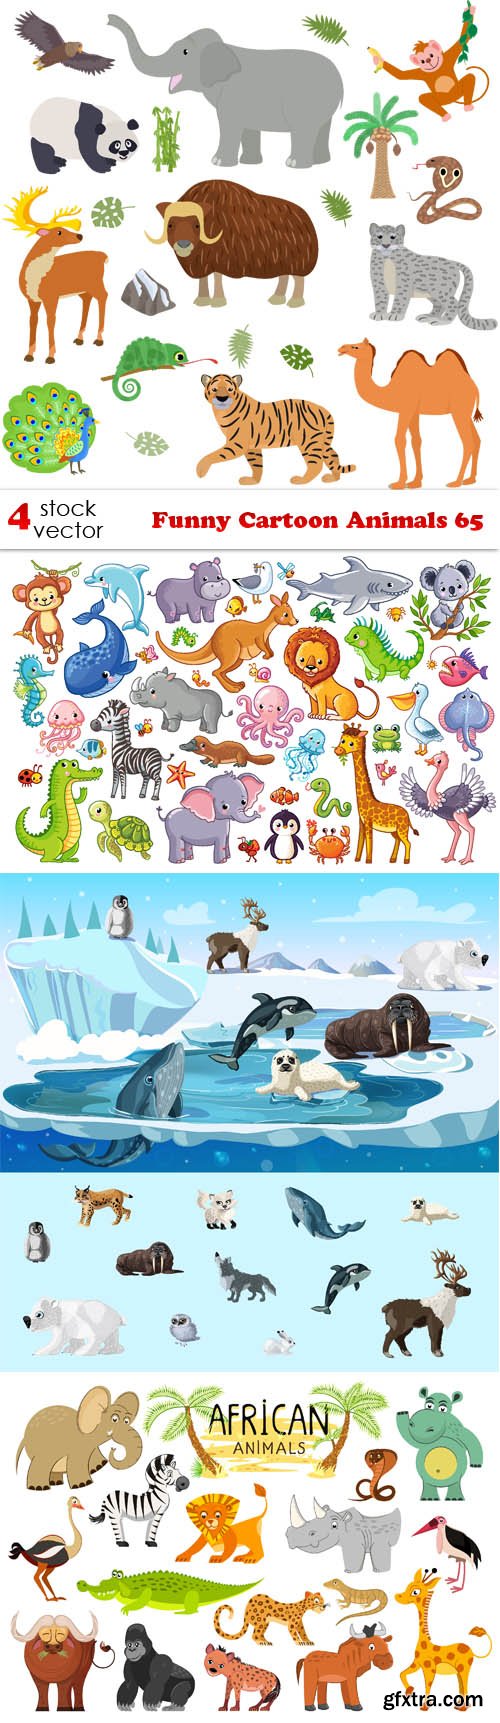 Vectors - Funny Cartoon Animals 65